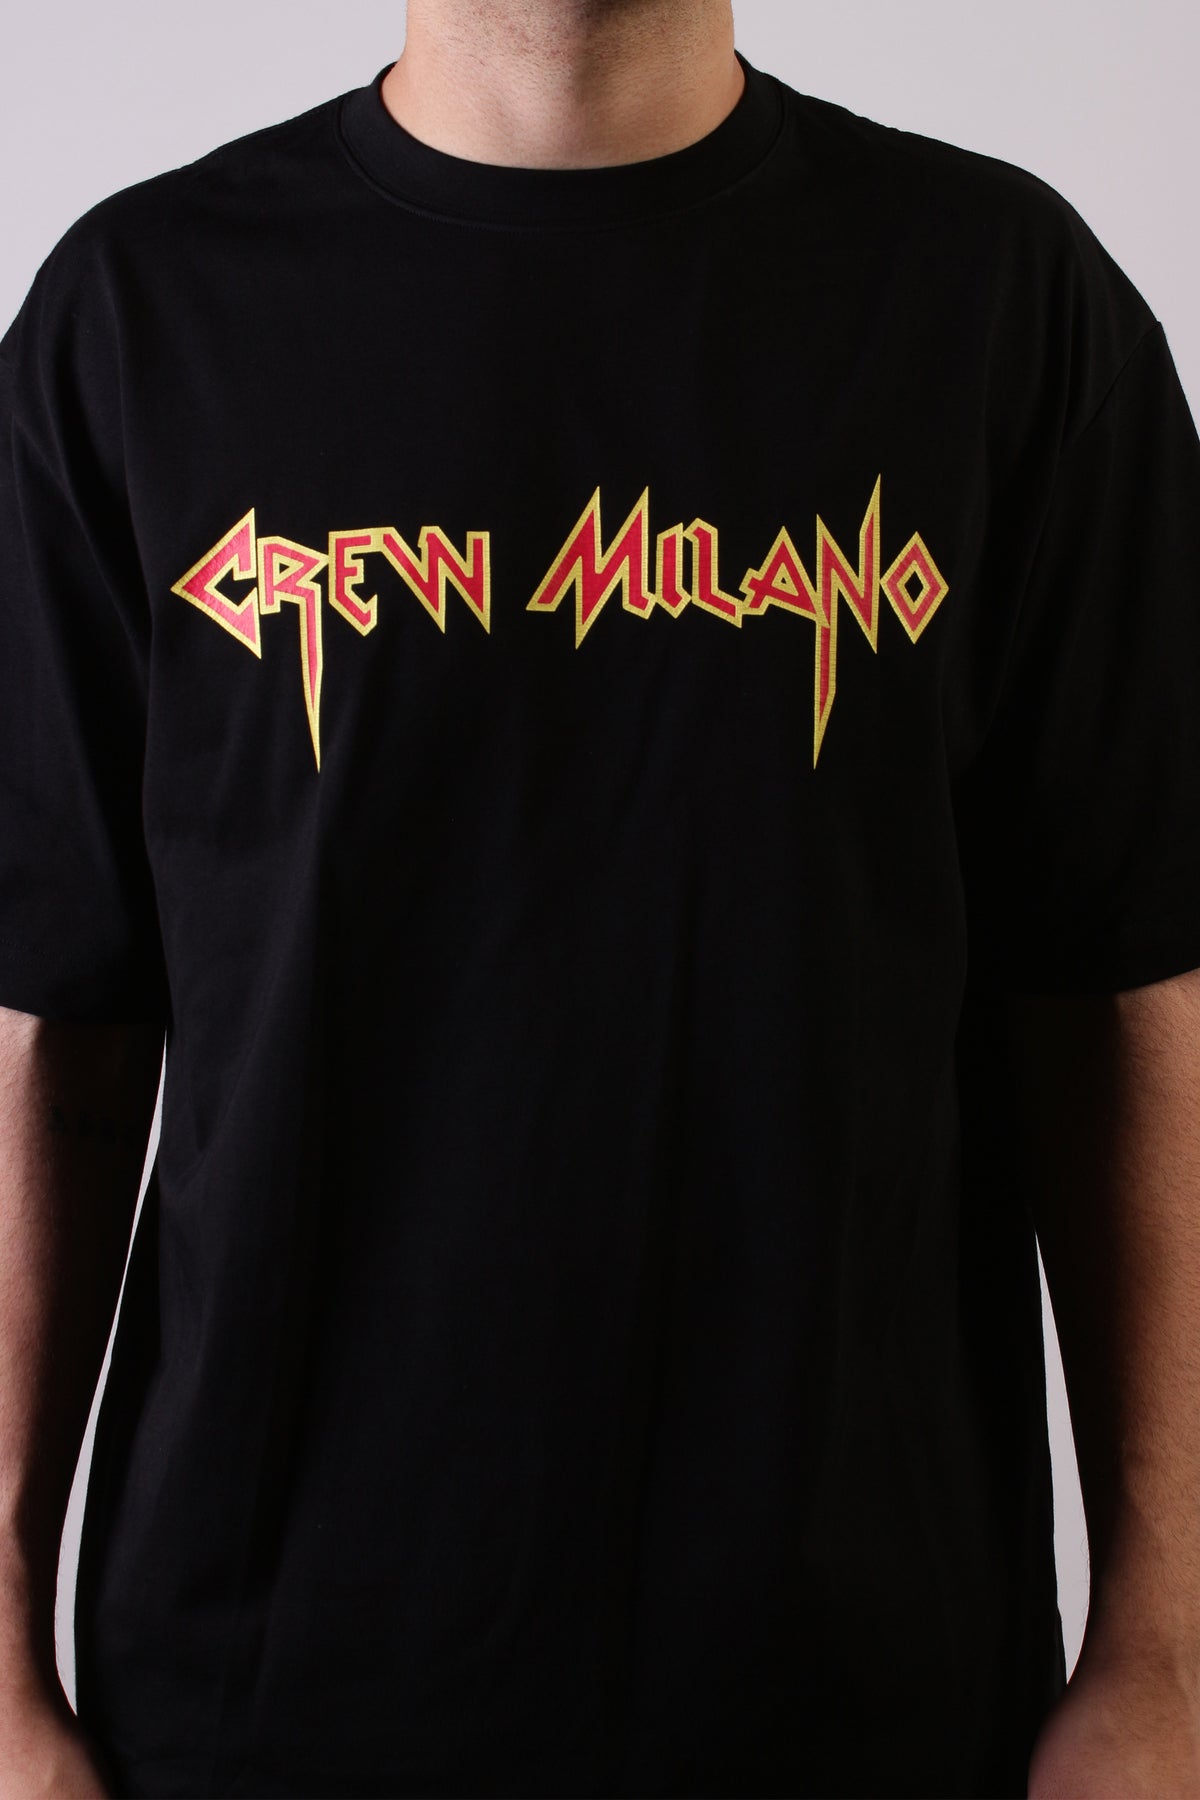 CREW Milano PARIS Black T-Shirt